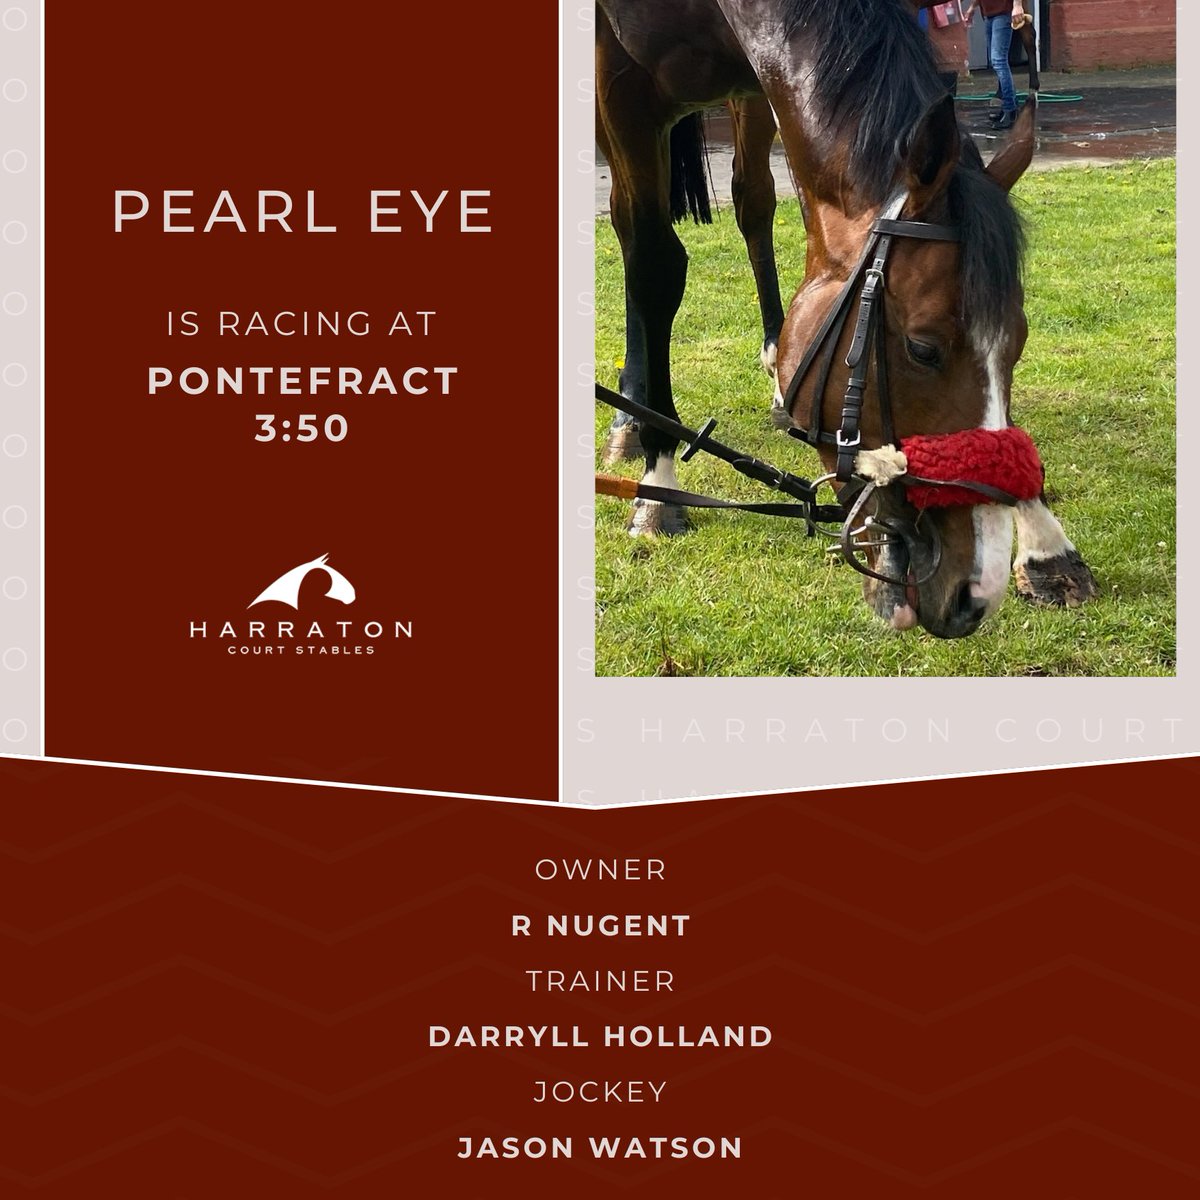 Pearl Eye is racing at Pontefract 3.50 Good luck to owner R Nugent, trainer #DarryllHolland and jockey @_JasonWatson #PearlEye #Winner